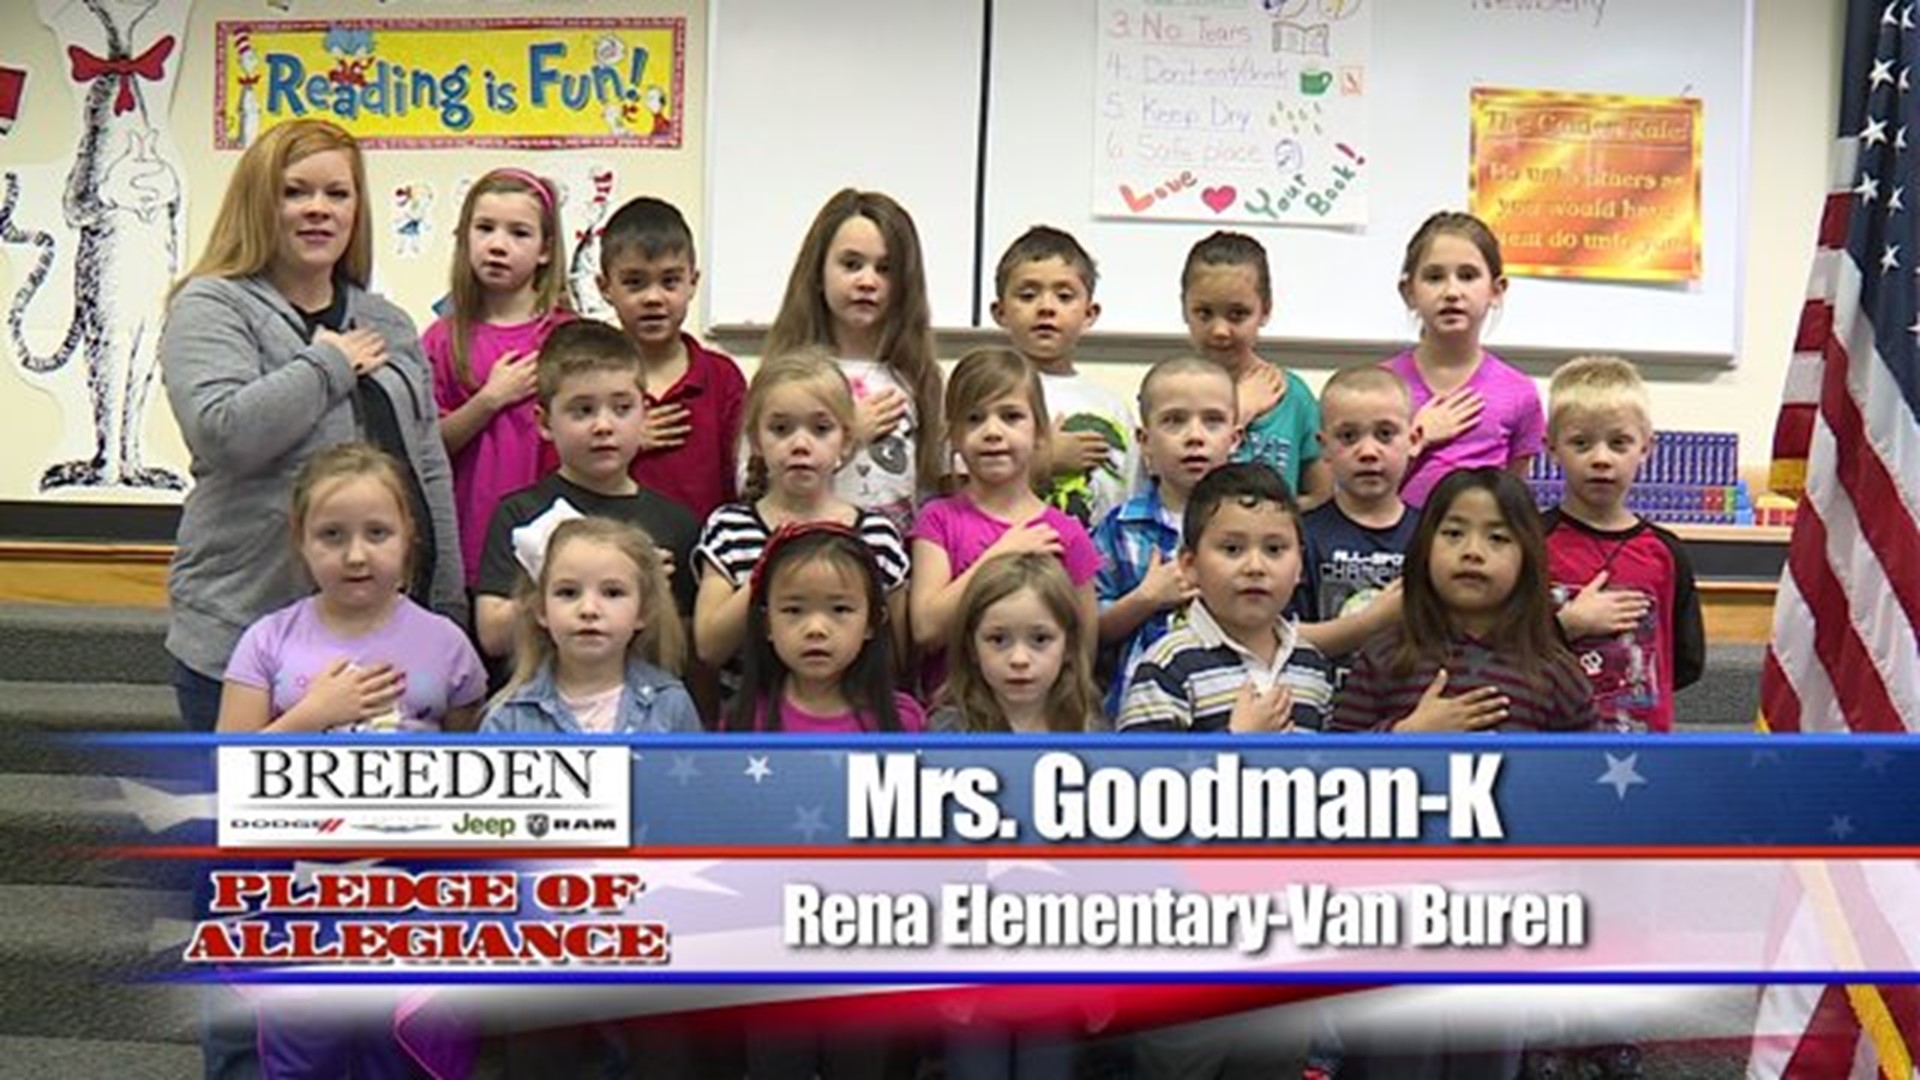 Rena Elementary - Van Buren, Mrs. Goodman - Kindergarten